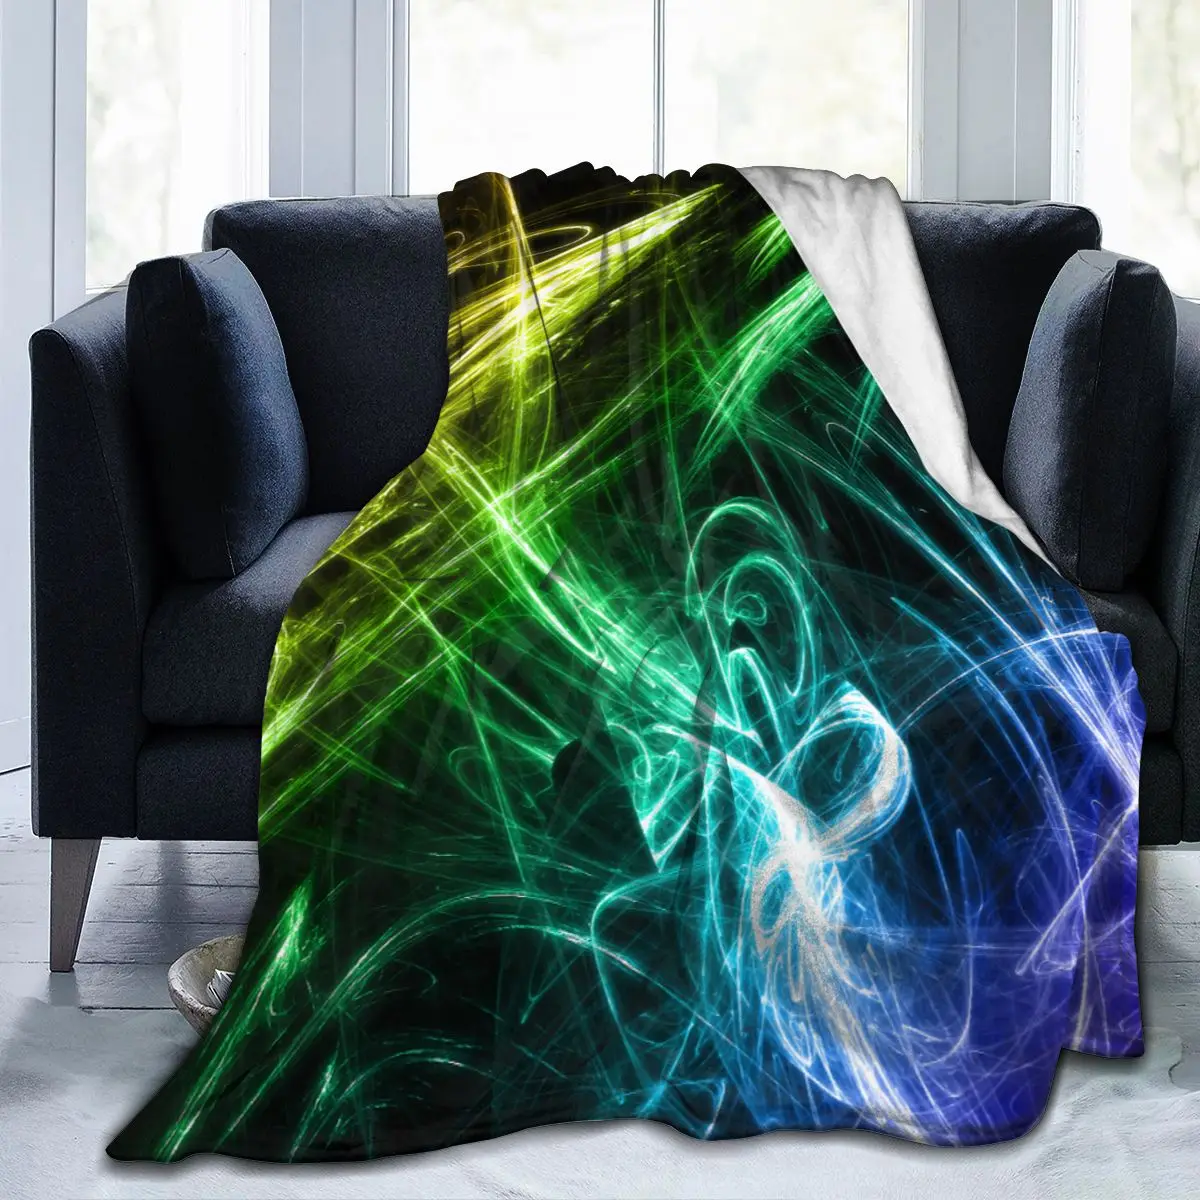 

Фланелевое Одеяло с 3D принтом, мягкое постельное белье, накидка на кровать, абстрактный дизайн, домашний текстиль